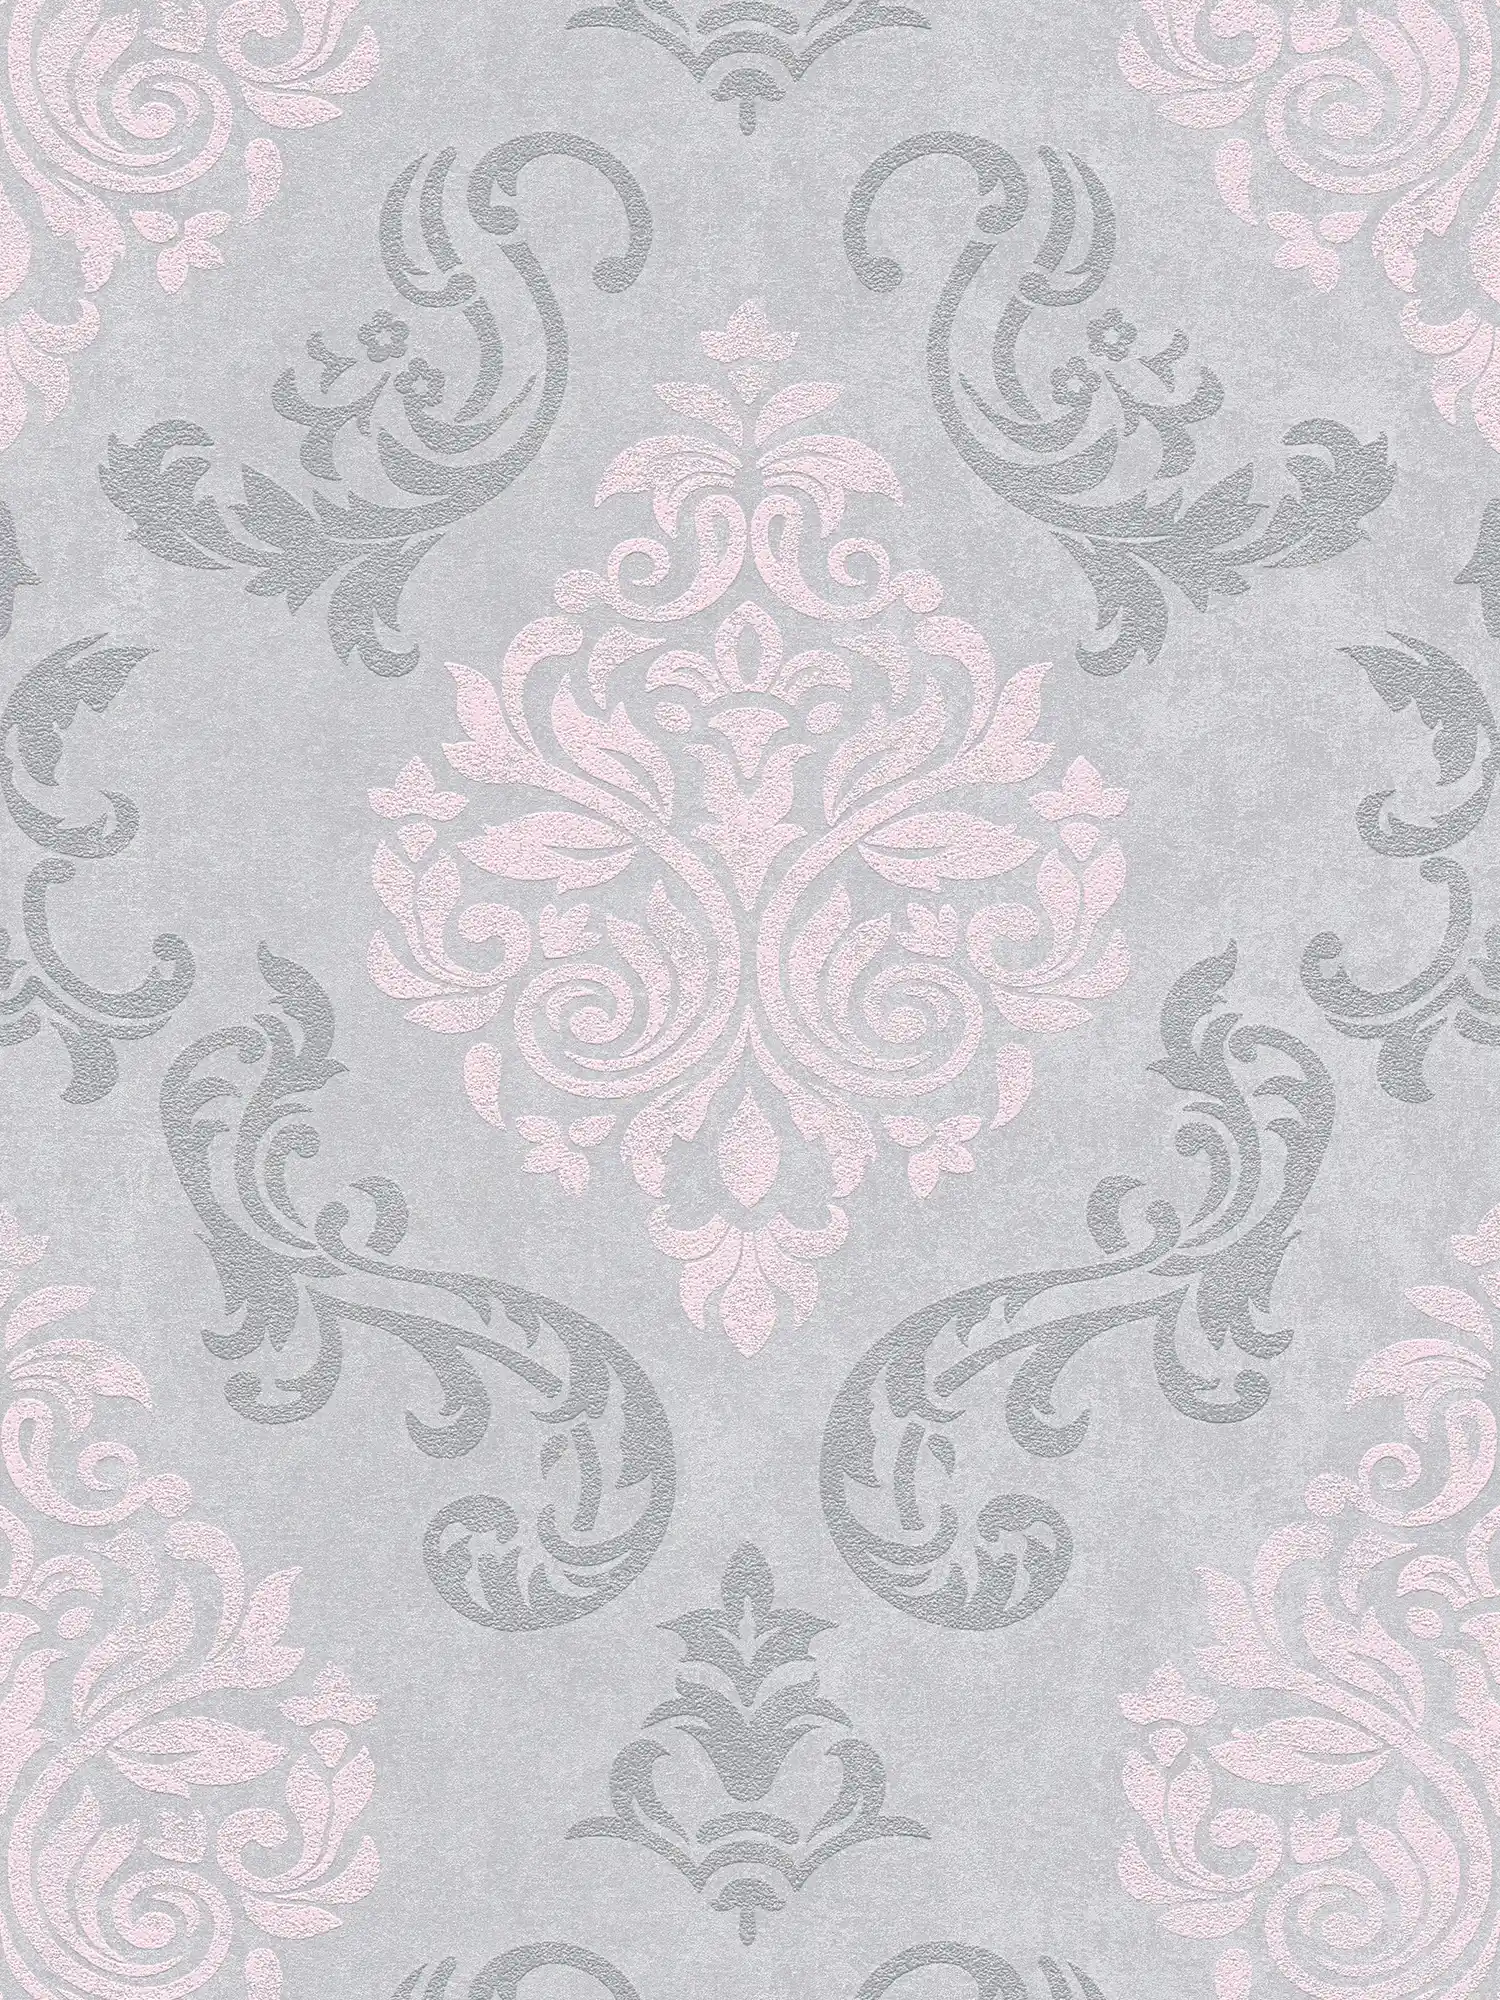         Ornements papier peint style baroque avec effet scintillant - gris, métallique, rose
    